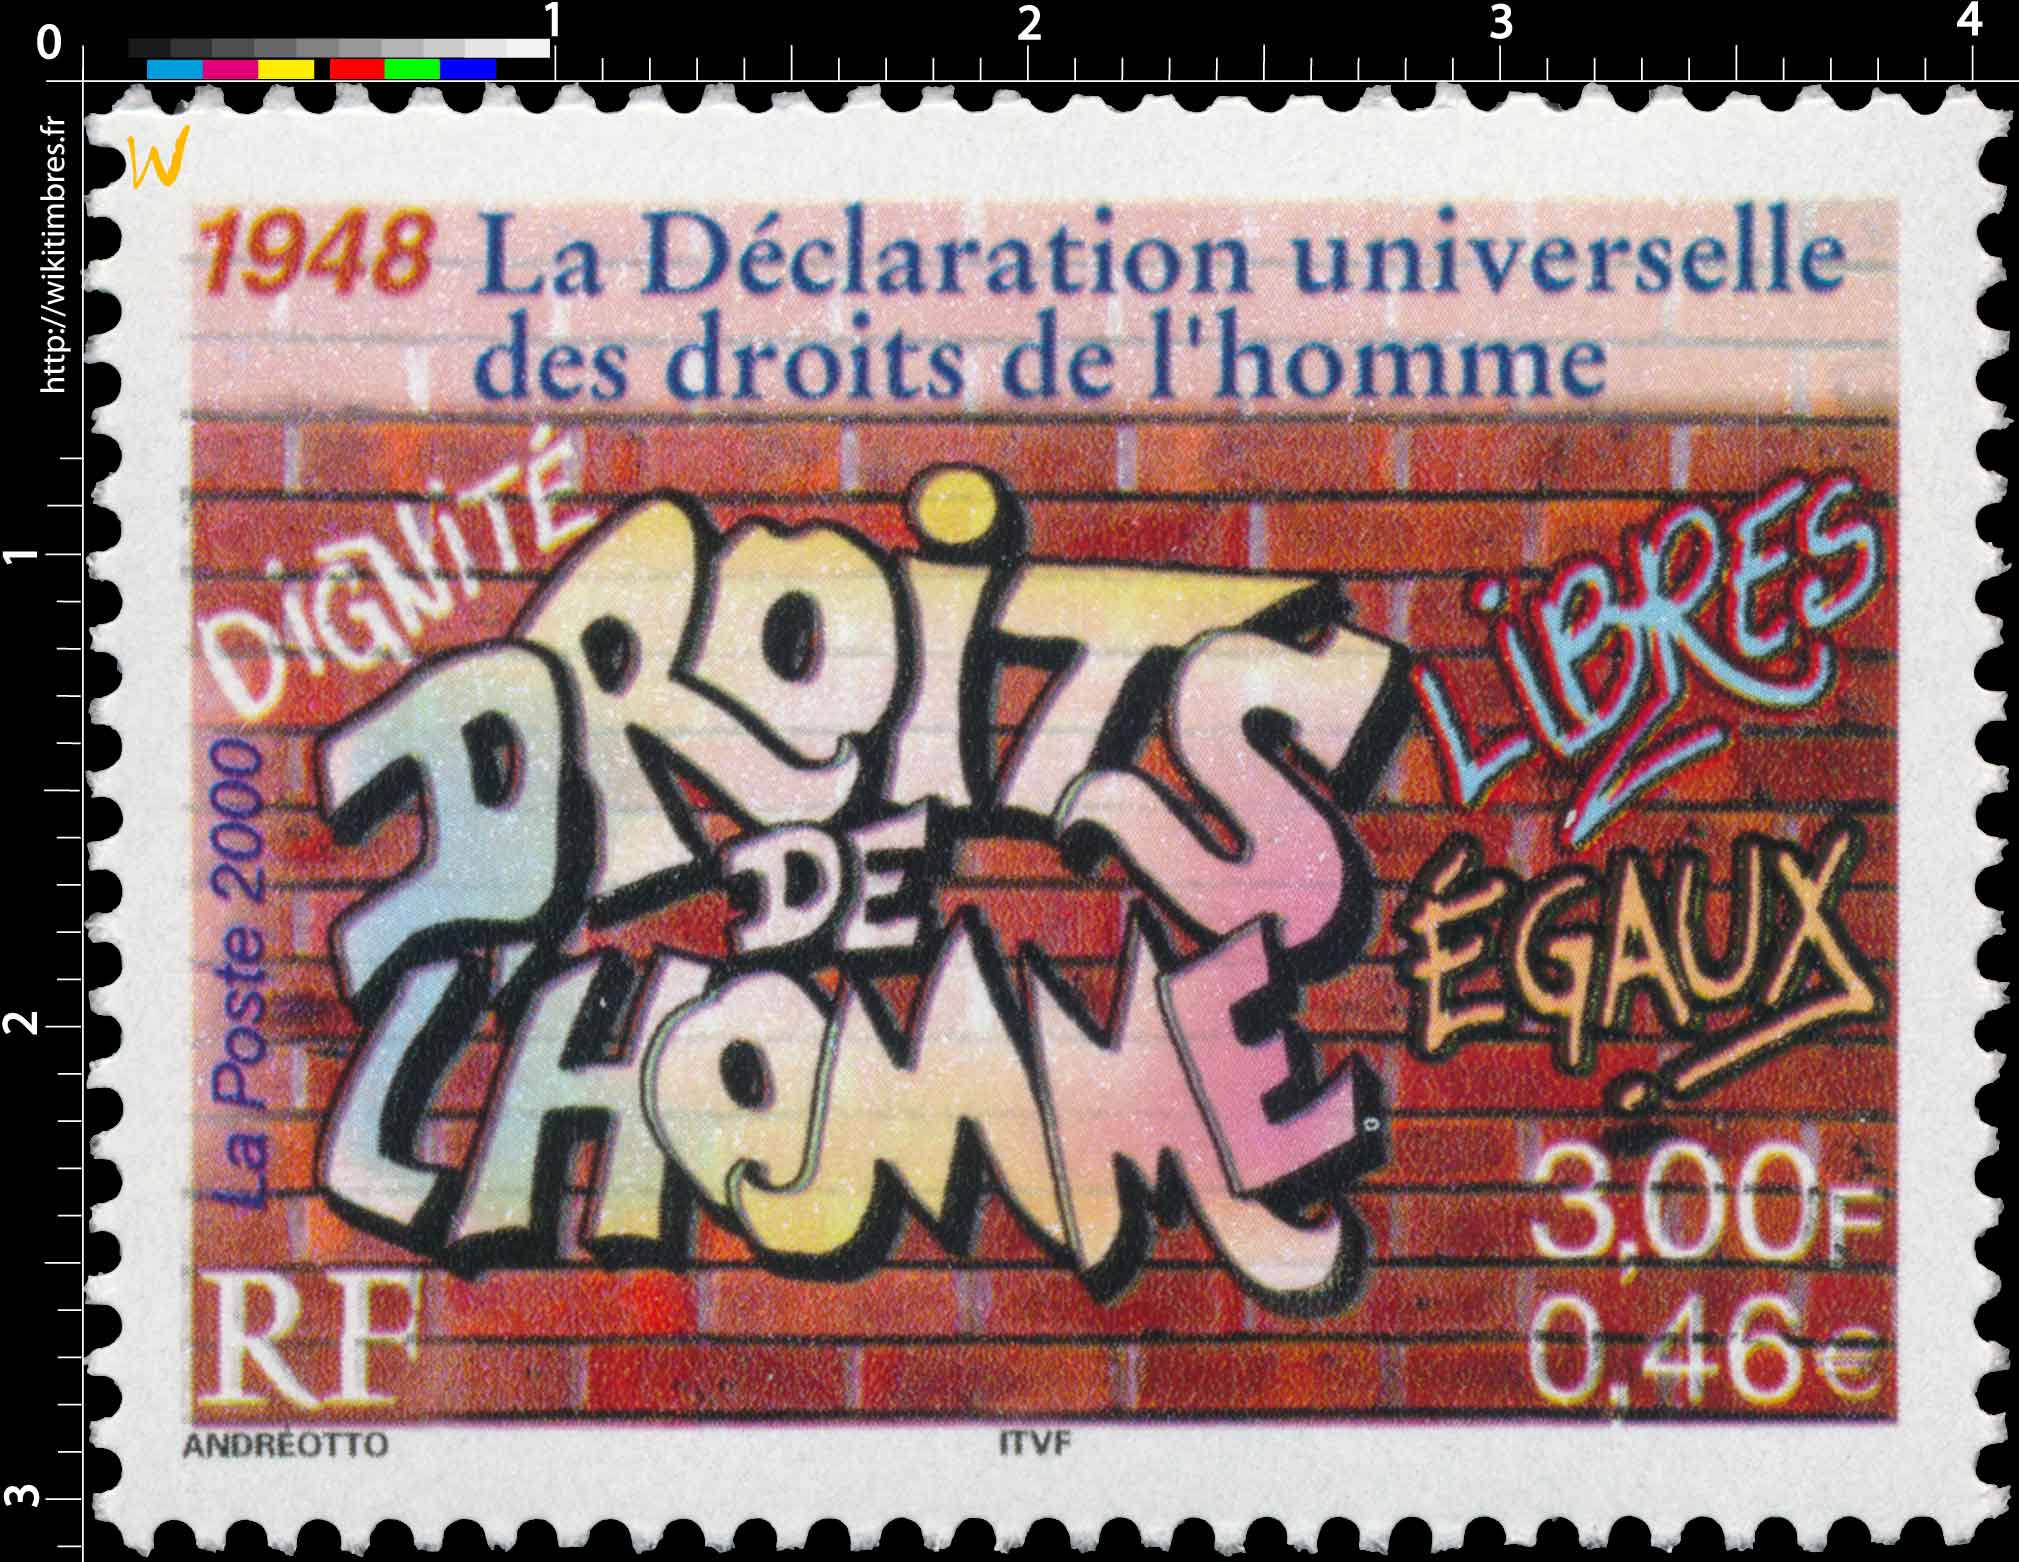 2000 1948 La Déclaration universelle des droits de l’homme DIGNITÉ LIBRES ÉGAUX